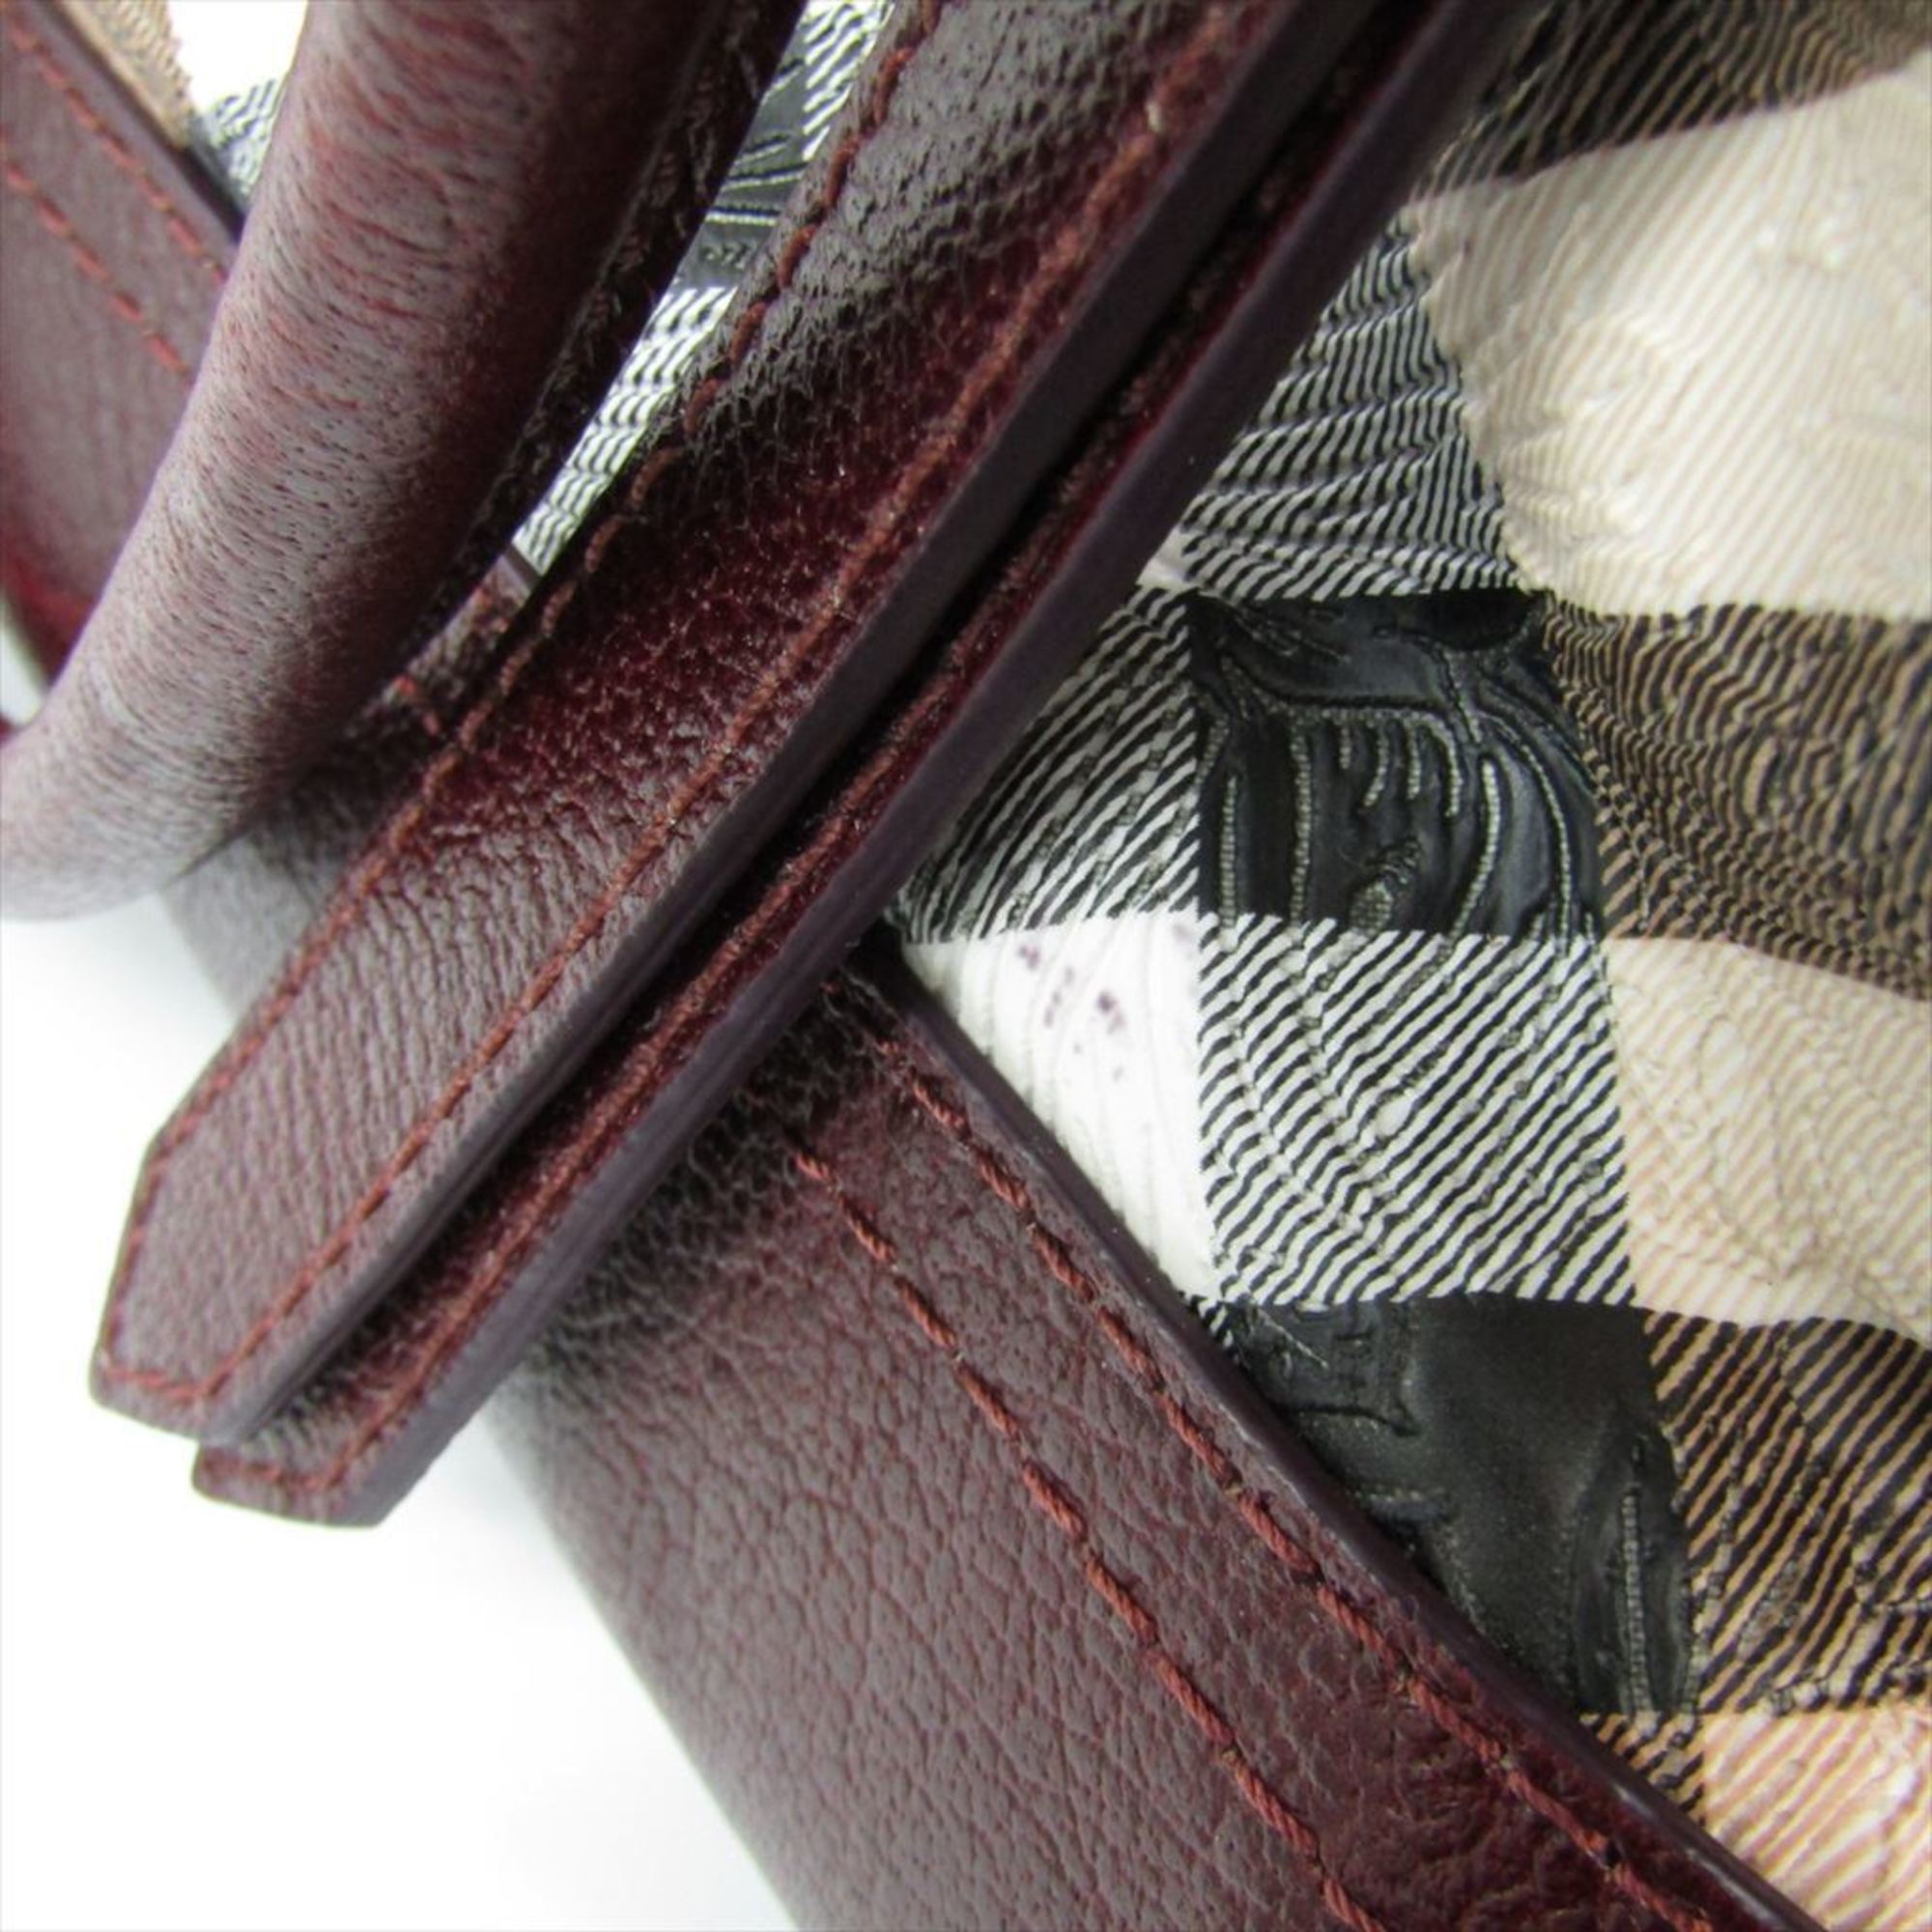 Burberry PVC,Leather Handbag Beige,Bordeaux Brown